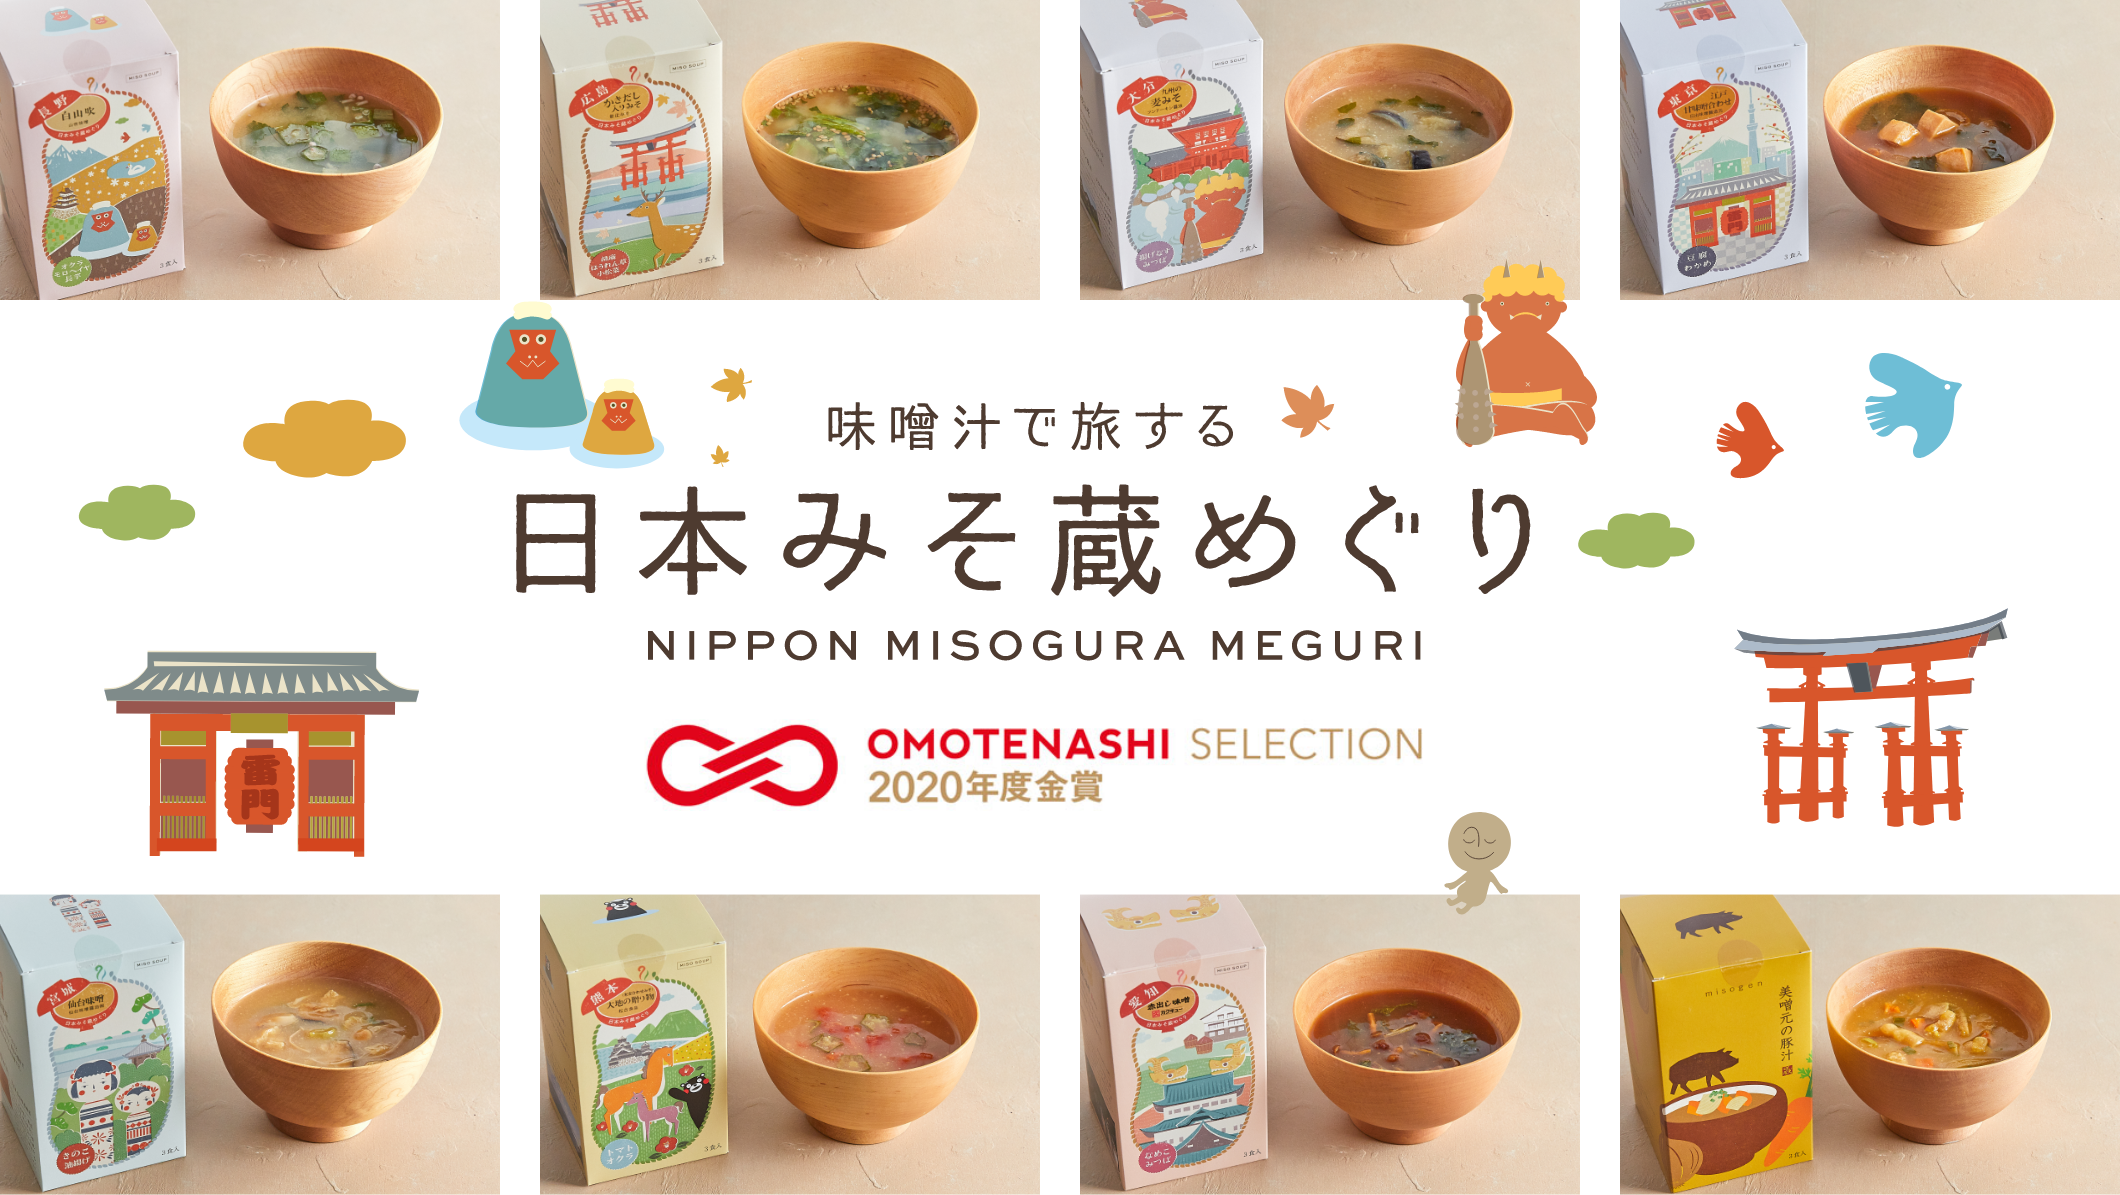 味噌汁で旅する 日本みそ蔵めぐり NIPPON MISOGURA MEGURI